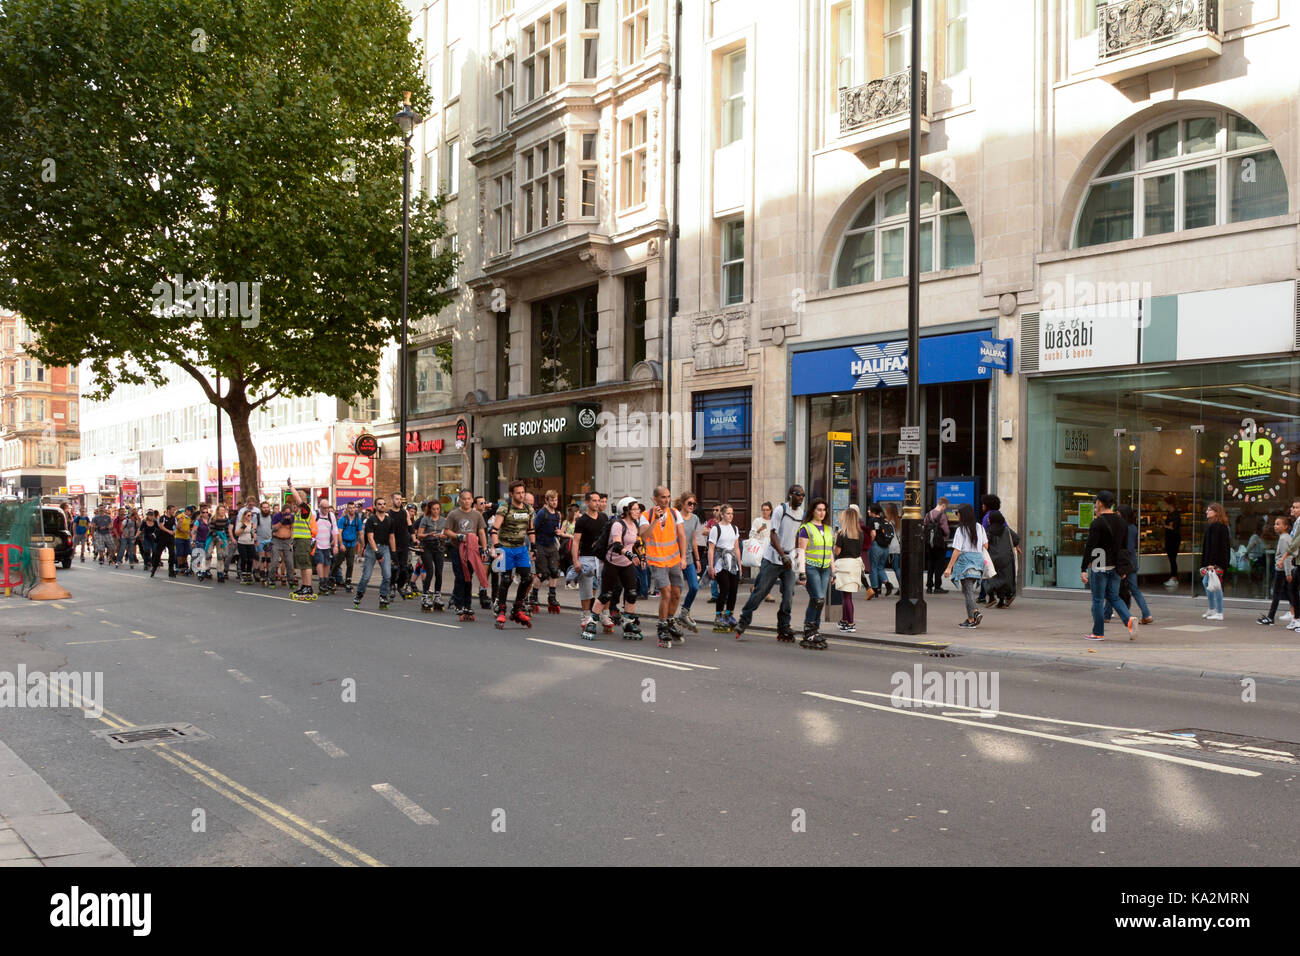 Londres, Inglaterra. 24 de septiembre de 2017: grupo organizado de roller dirigiéndose hacia el este por Oxford Street en la carretera con tráfico tras ellos en Londres, Inglaterra. Martin Parker/Alamy Live News Foto de stock